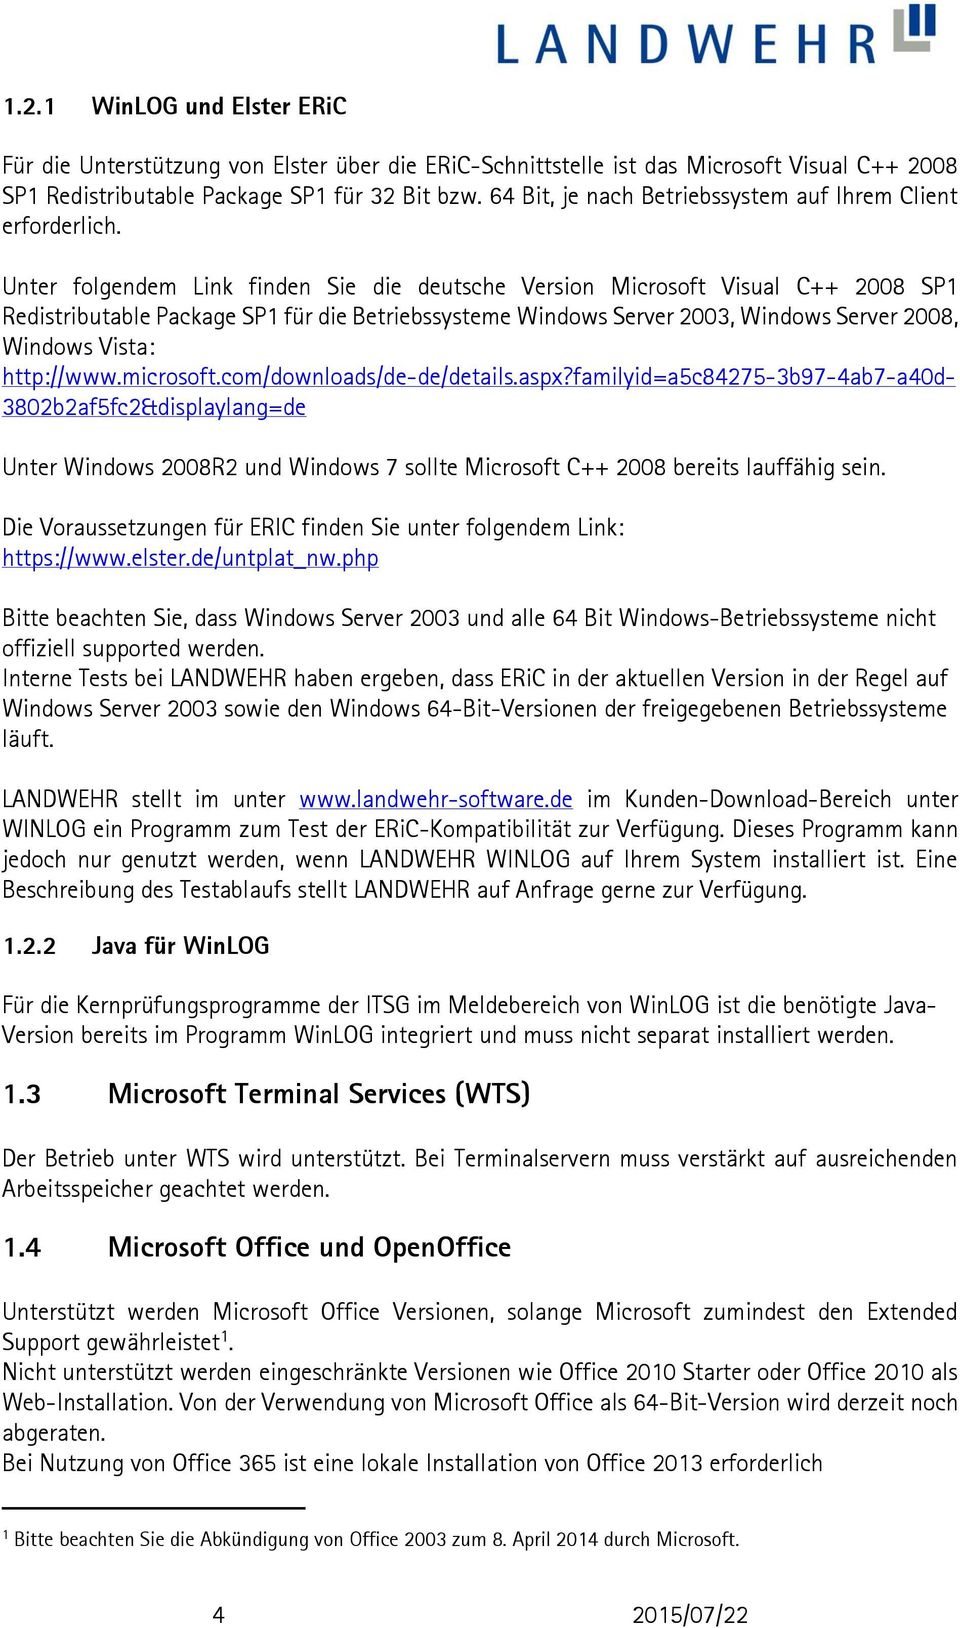 Unter folgendem Link finden Sie die deutsche Version Microsoft Visual C++ 2008 SP1 Redistributable Package SP1 für die Betriebssysteme Windows Server 2003, Windows Server 2008, Windows Vista: